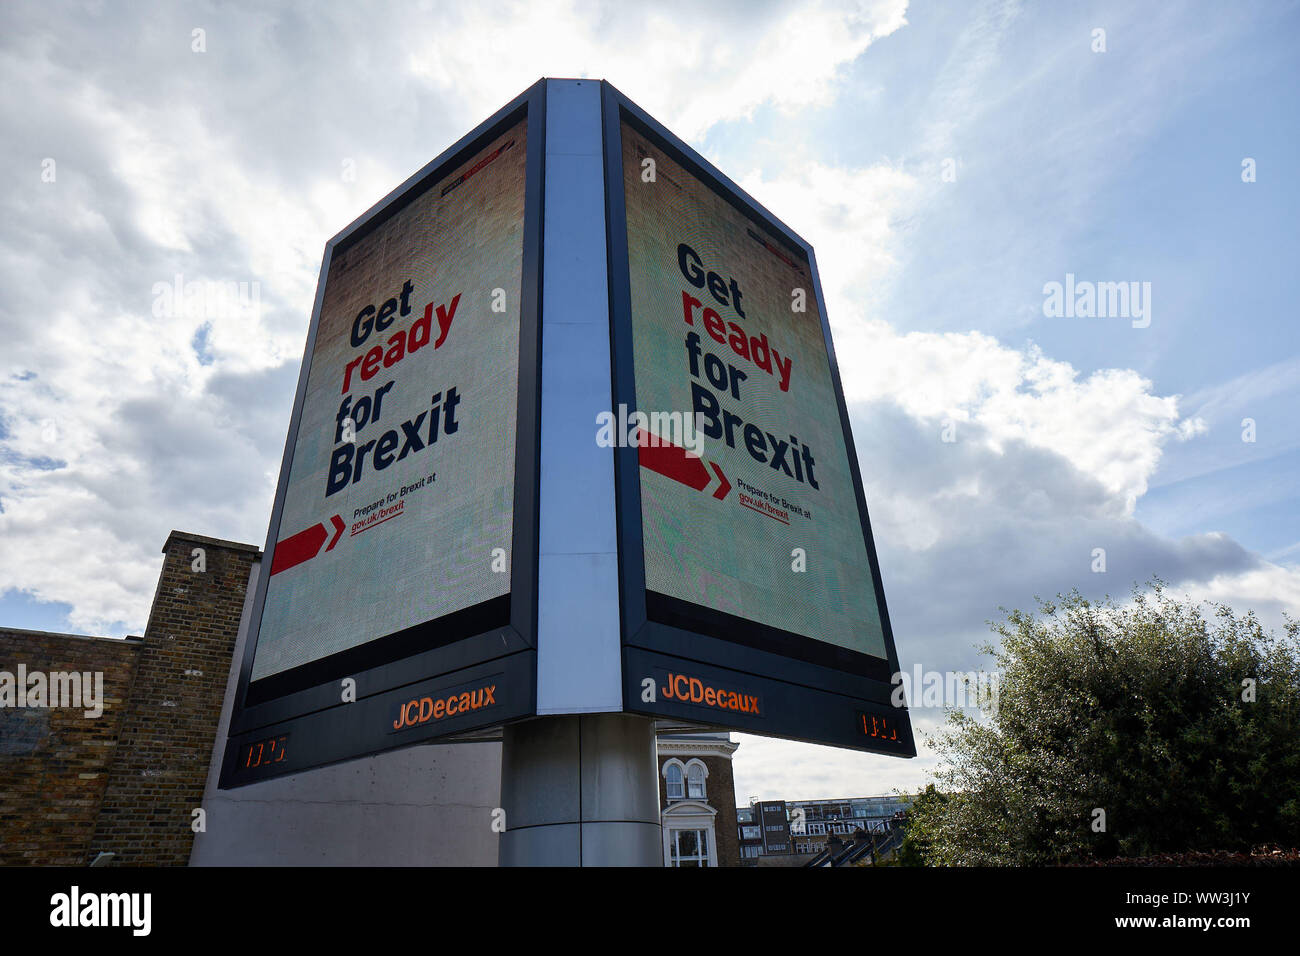 Londres, Royaume-Uni - 10 septembre 2019 : une double face lumineux annonce au Holland Park rond-point dans le cadre de la nouvelle campagne du gouvernement qui appelle à se préparer à Brexit. Banque D'Images